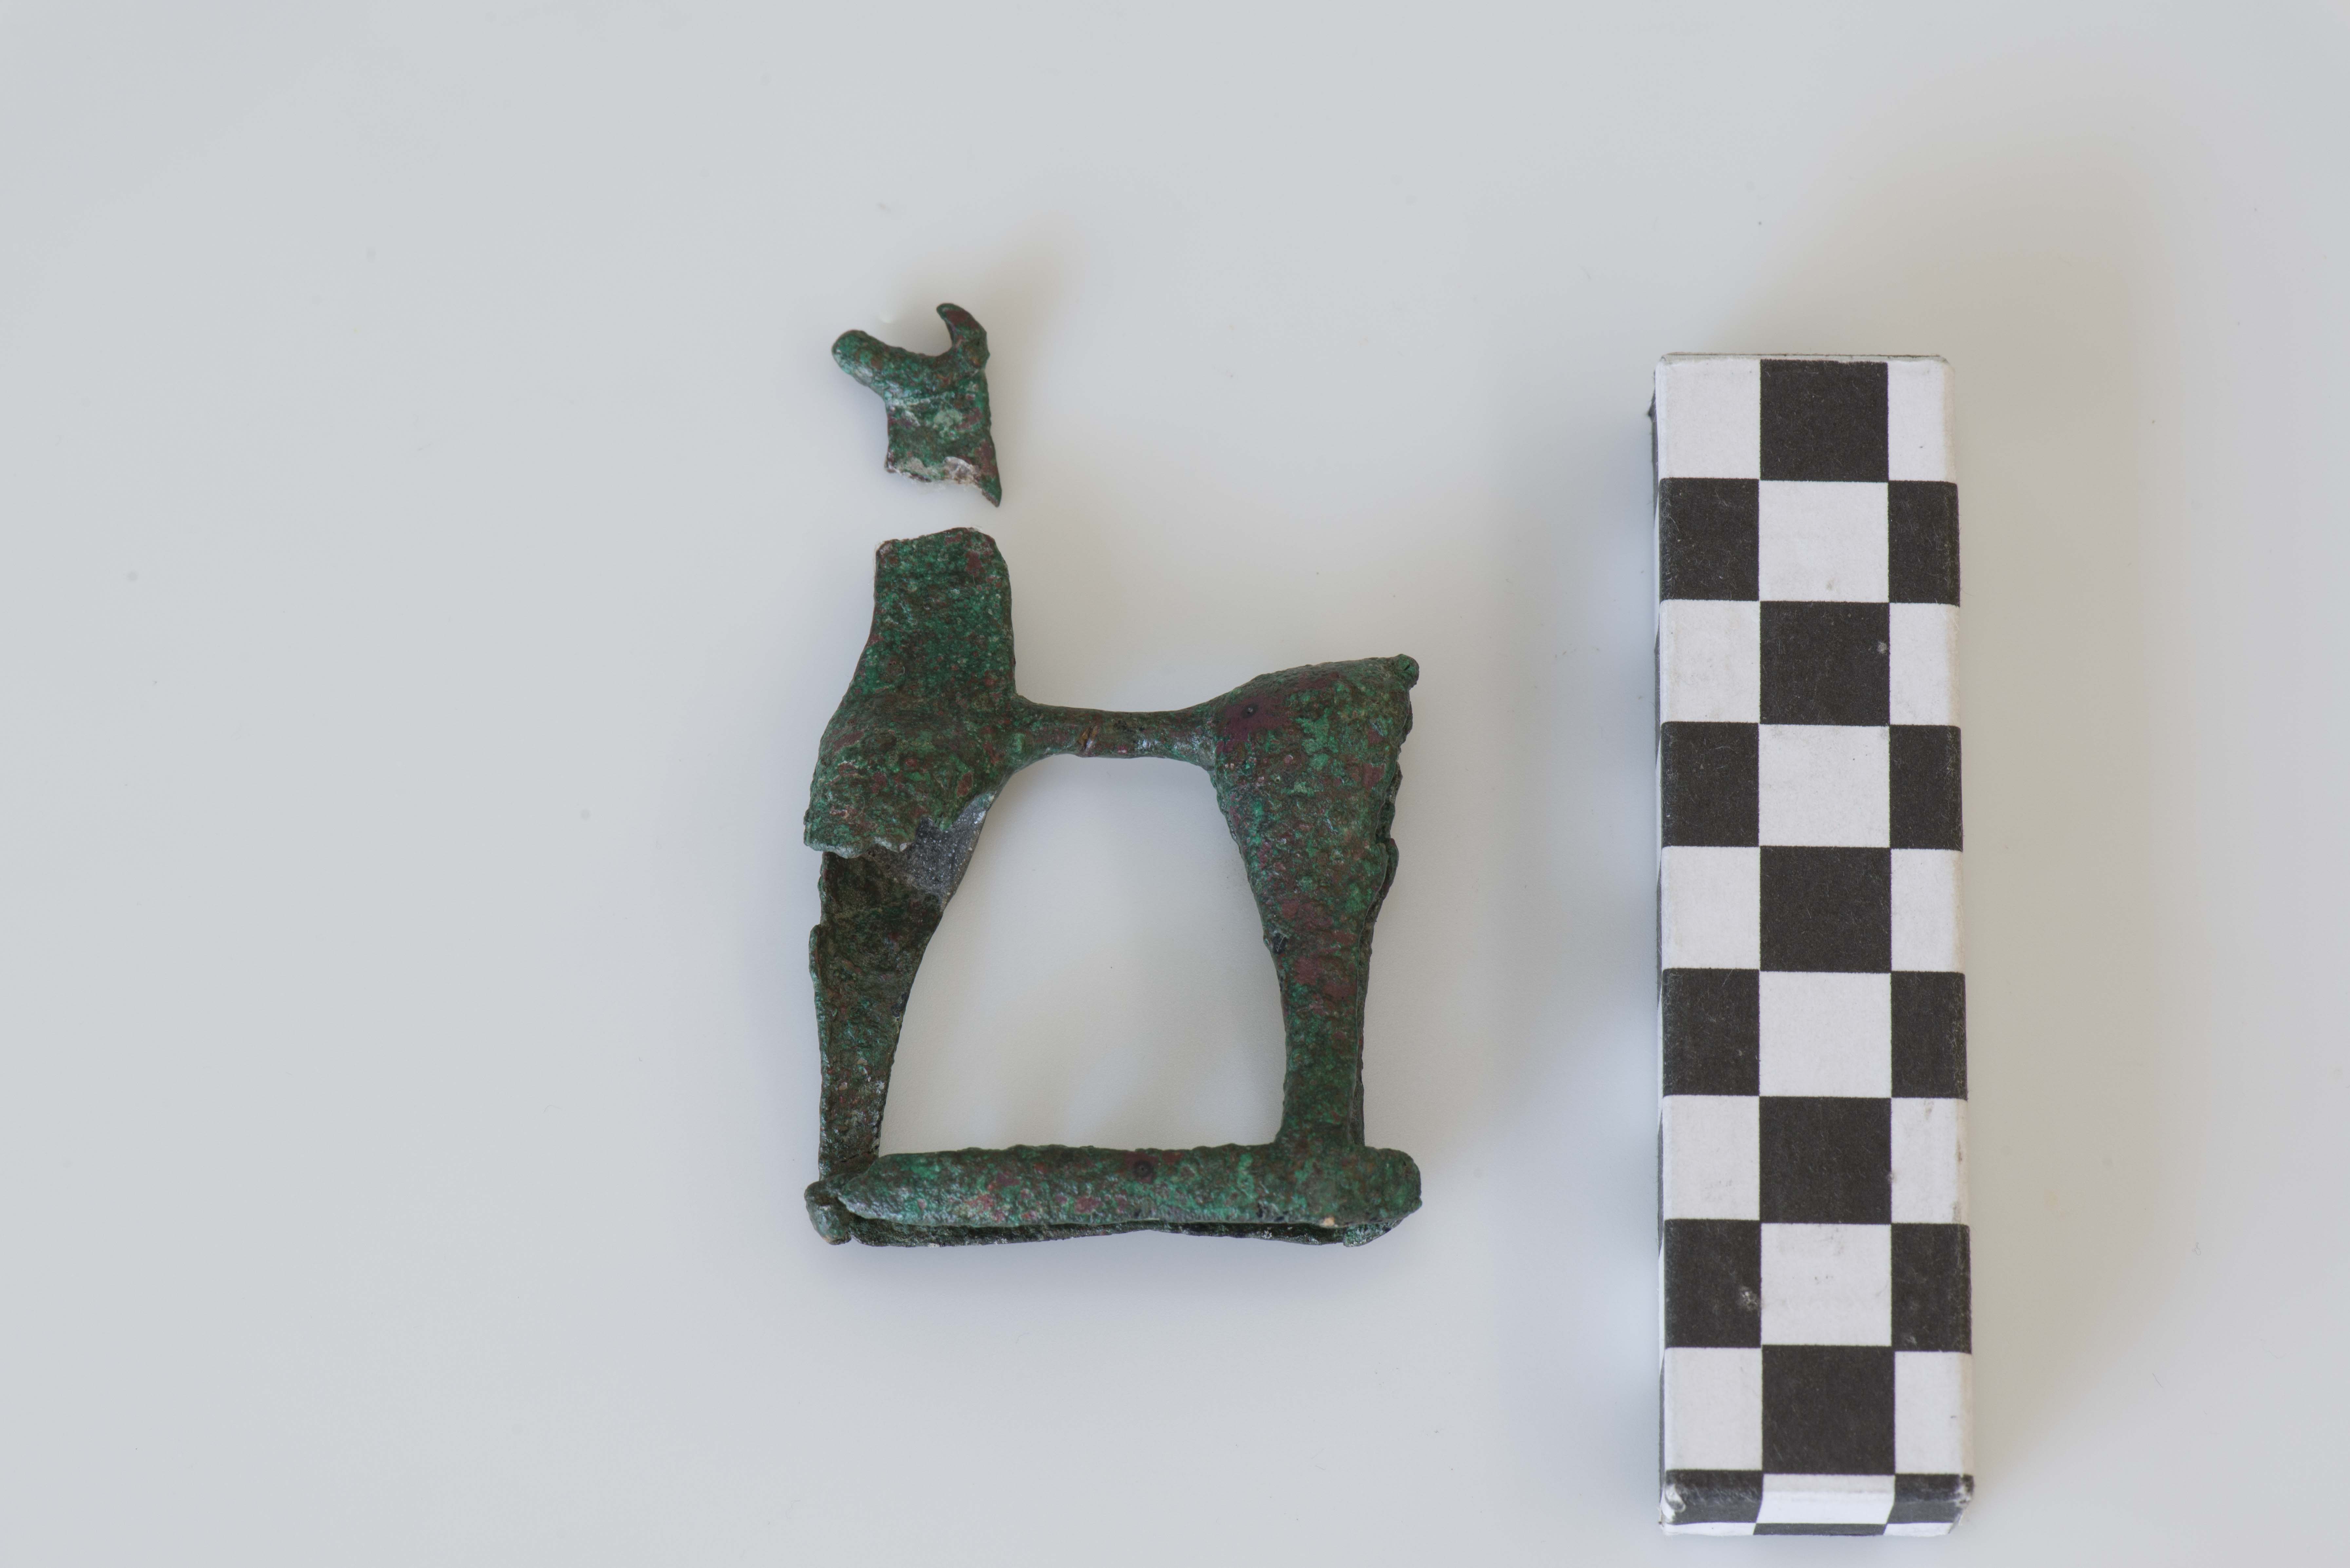 statuetta/ votiva, Cavallino in bronzo (SECOLI/ VIII a.C)